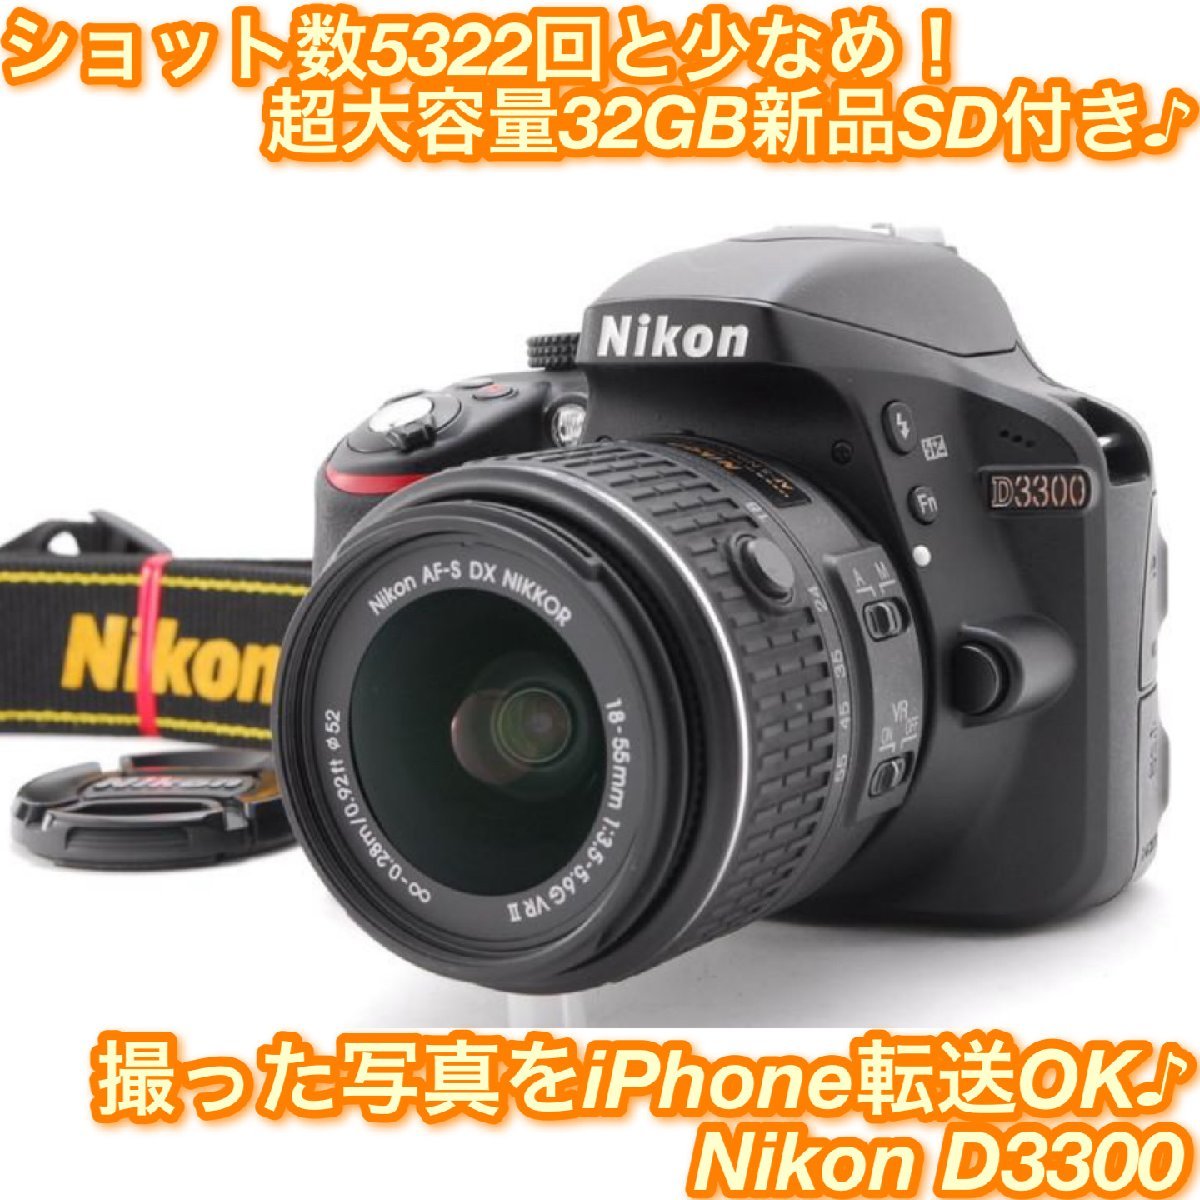 カメラ デジタルカメラ Nikon D3300望遠レンズセット☆スマホ転送OK☆3121 o3bg.com